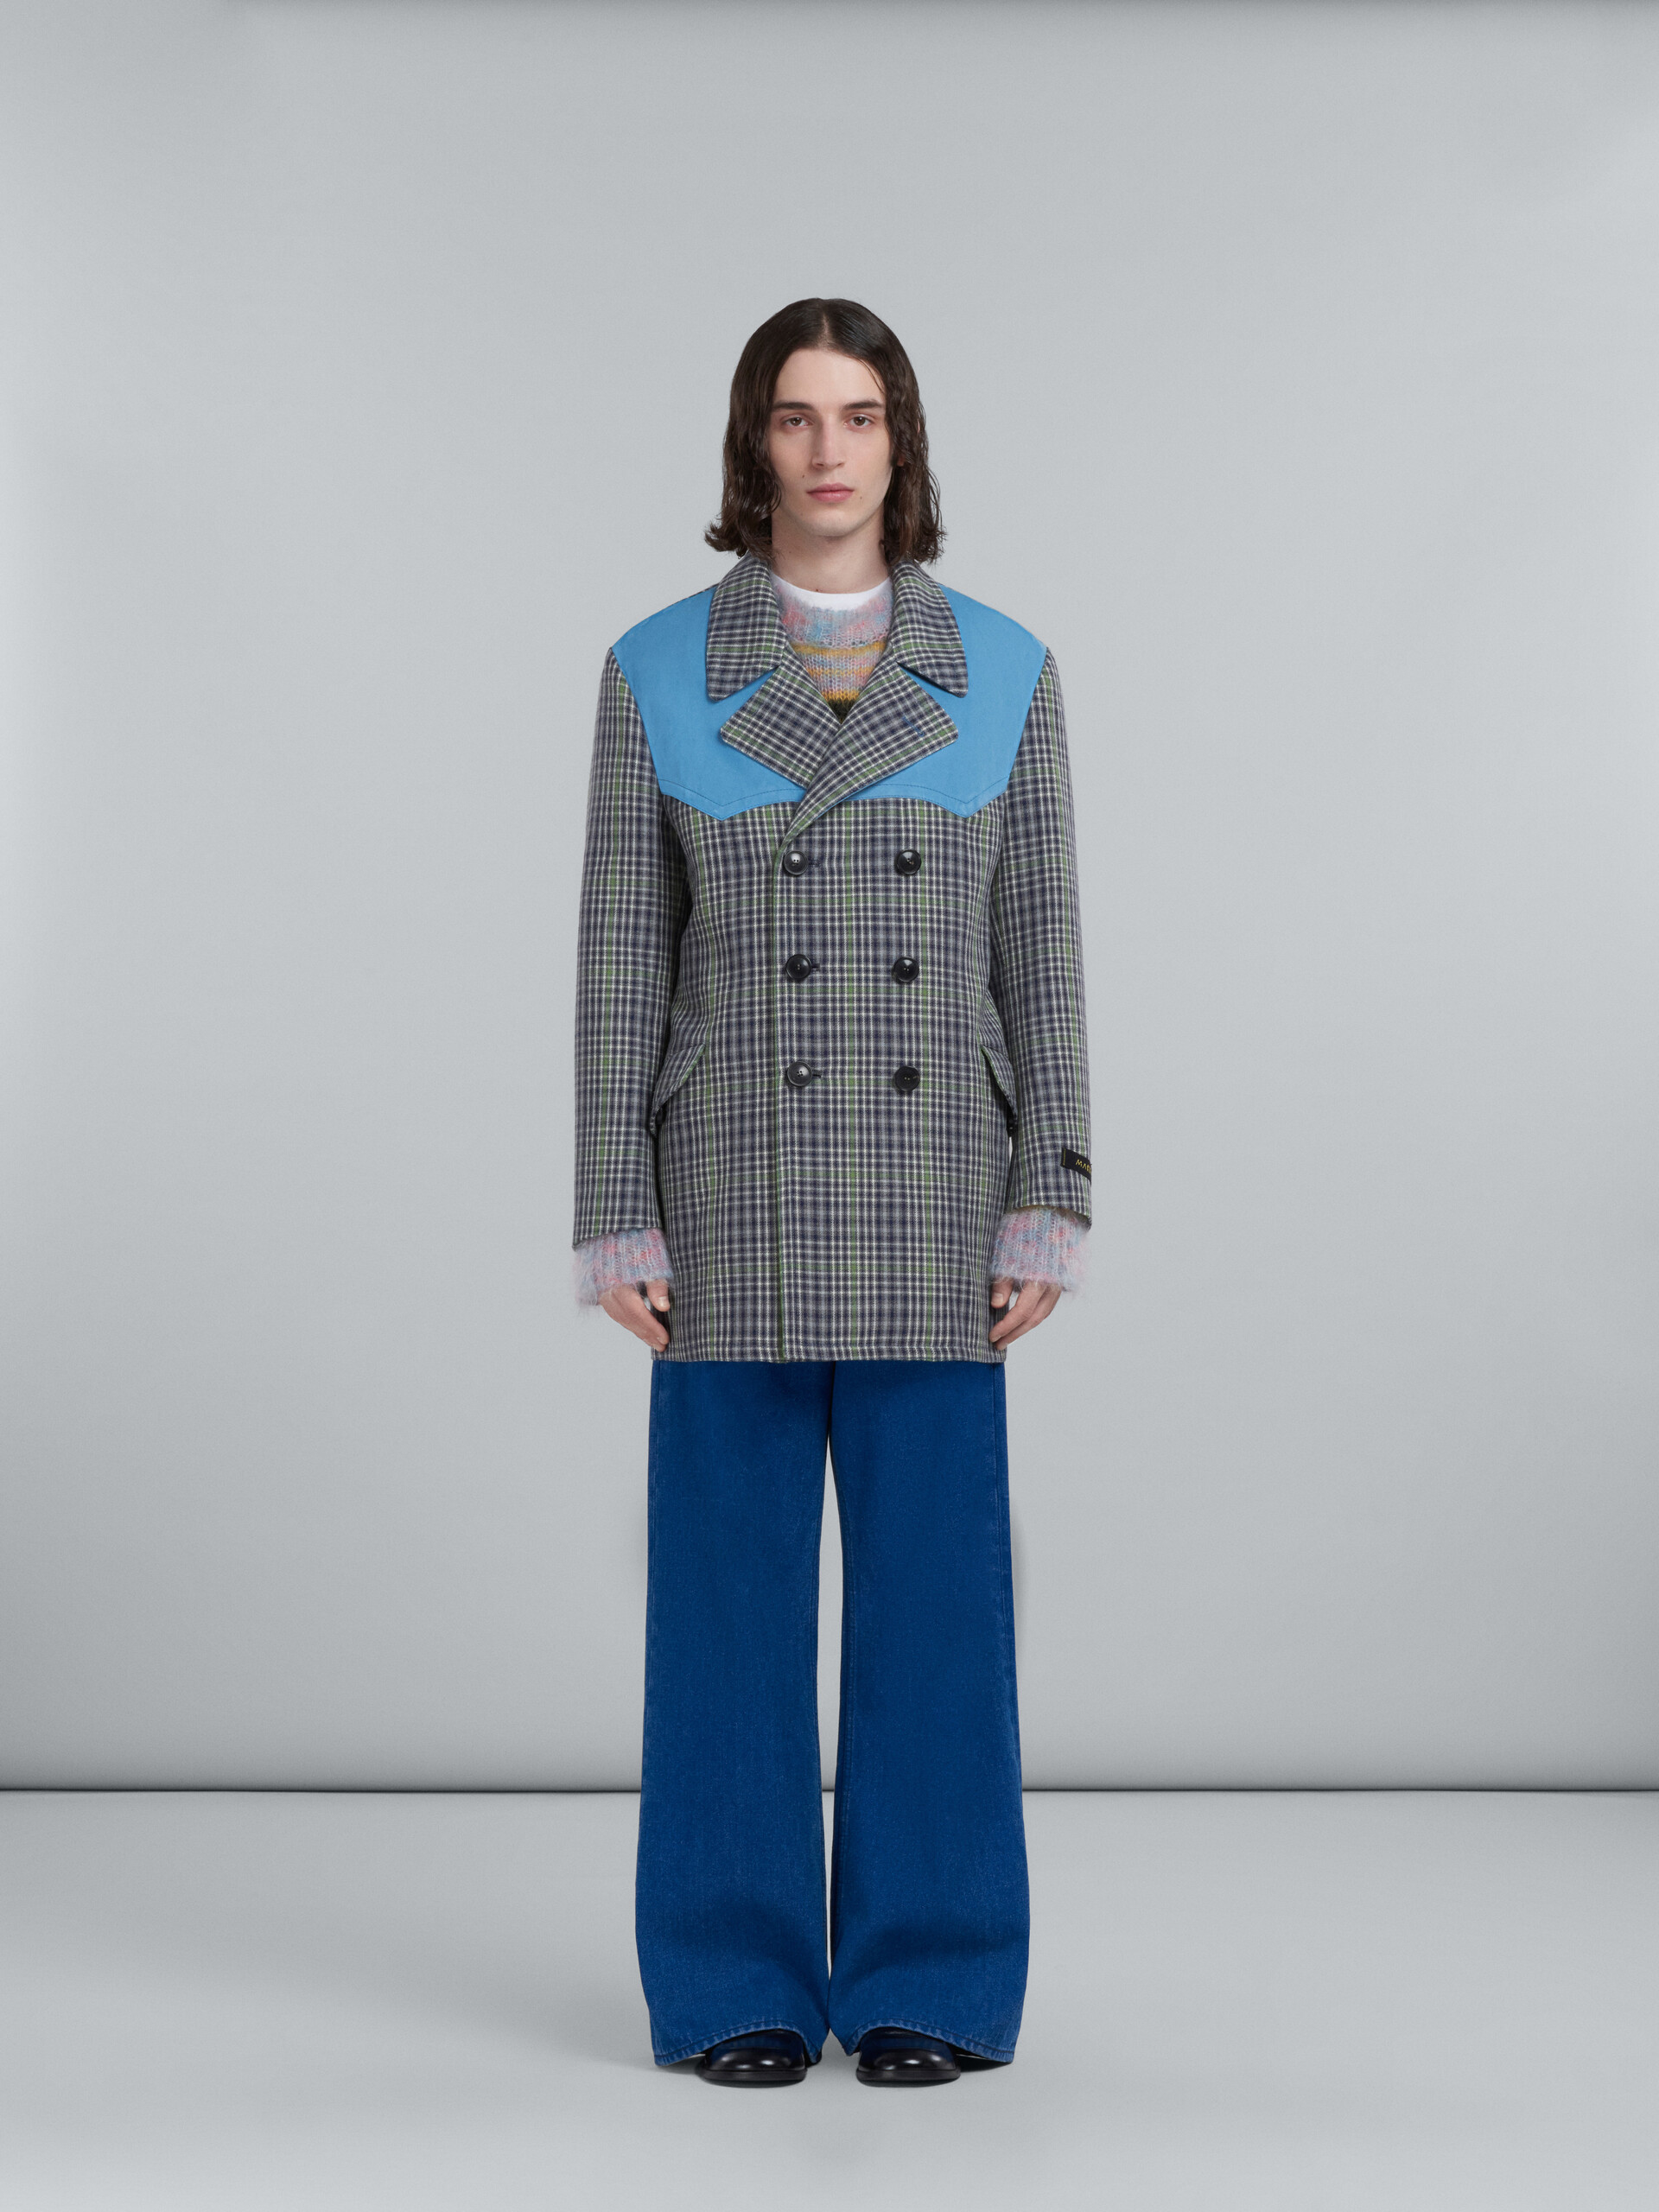 Doppelreihiger Mantel aus grau karierter Wolle - Mäntel - Image 2